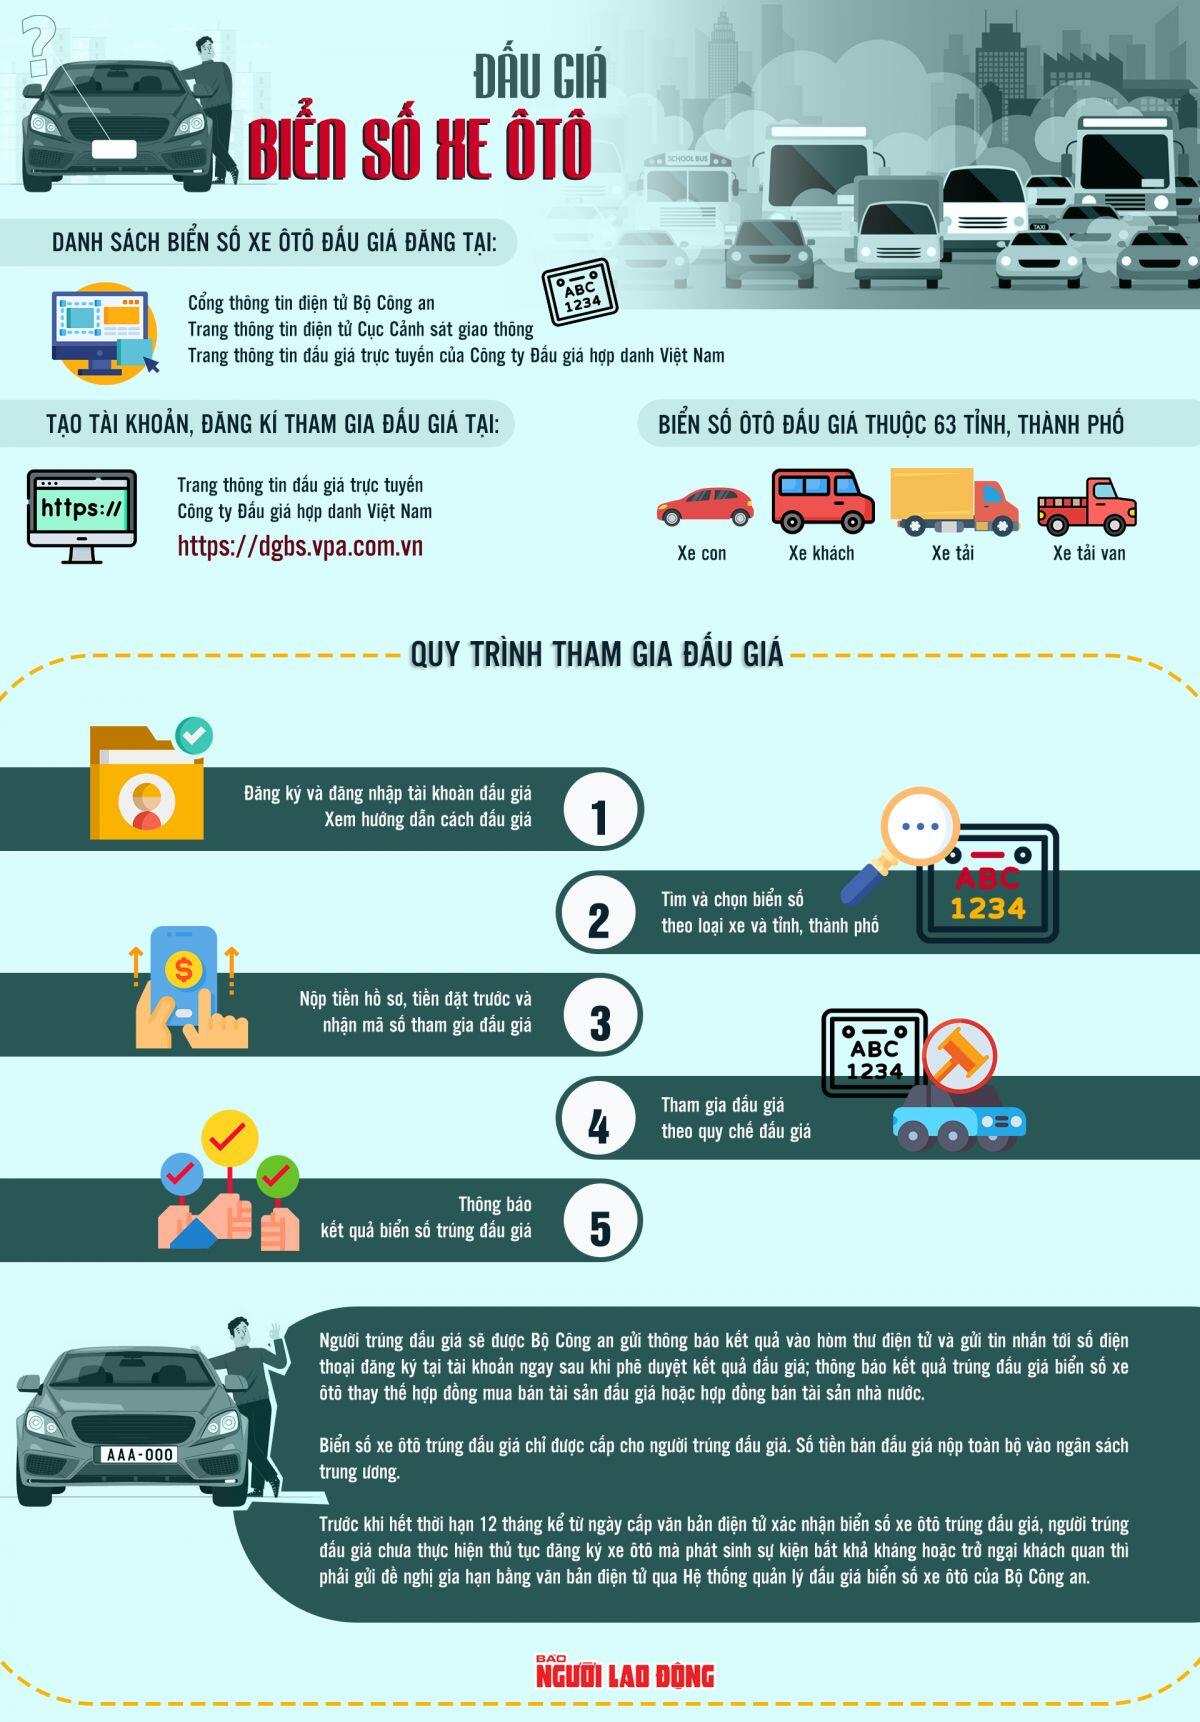 [Infographic] Đấu giá biển số ôtô như thế nào?